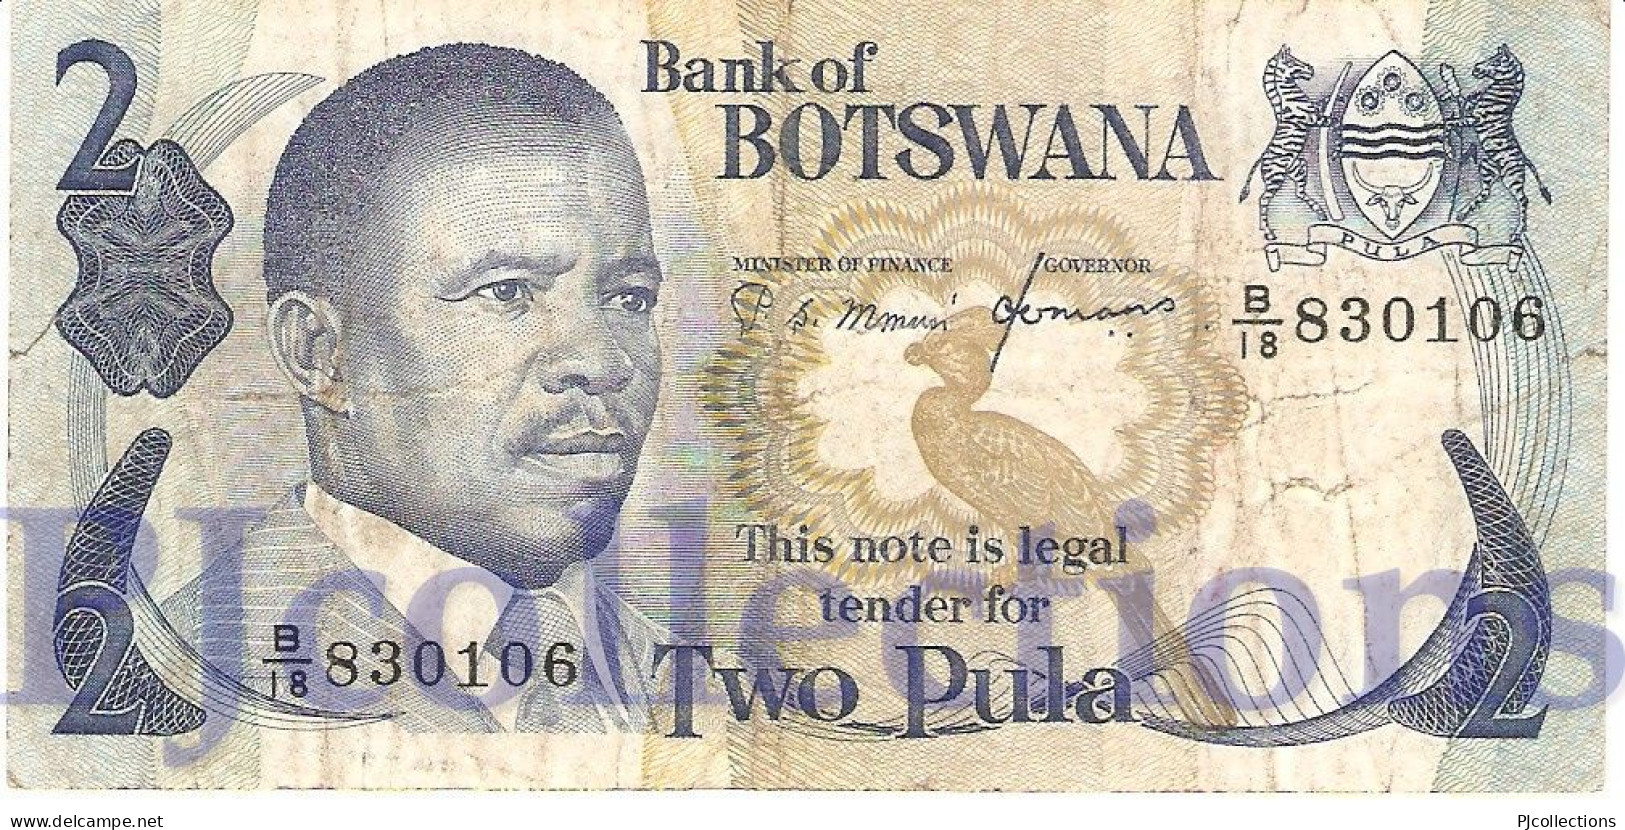 BOTSWANA 2 PULA 1982 PICK 7c VF - Botswana